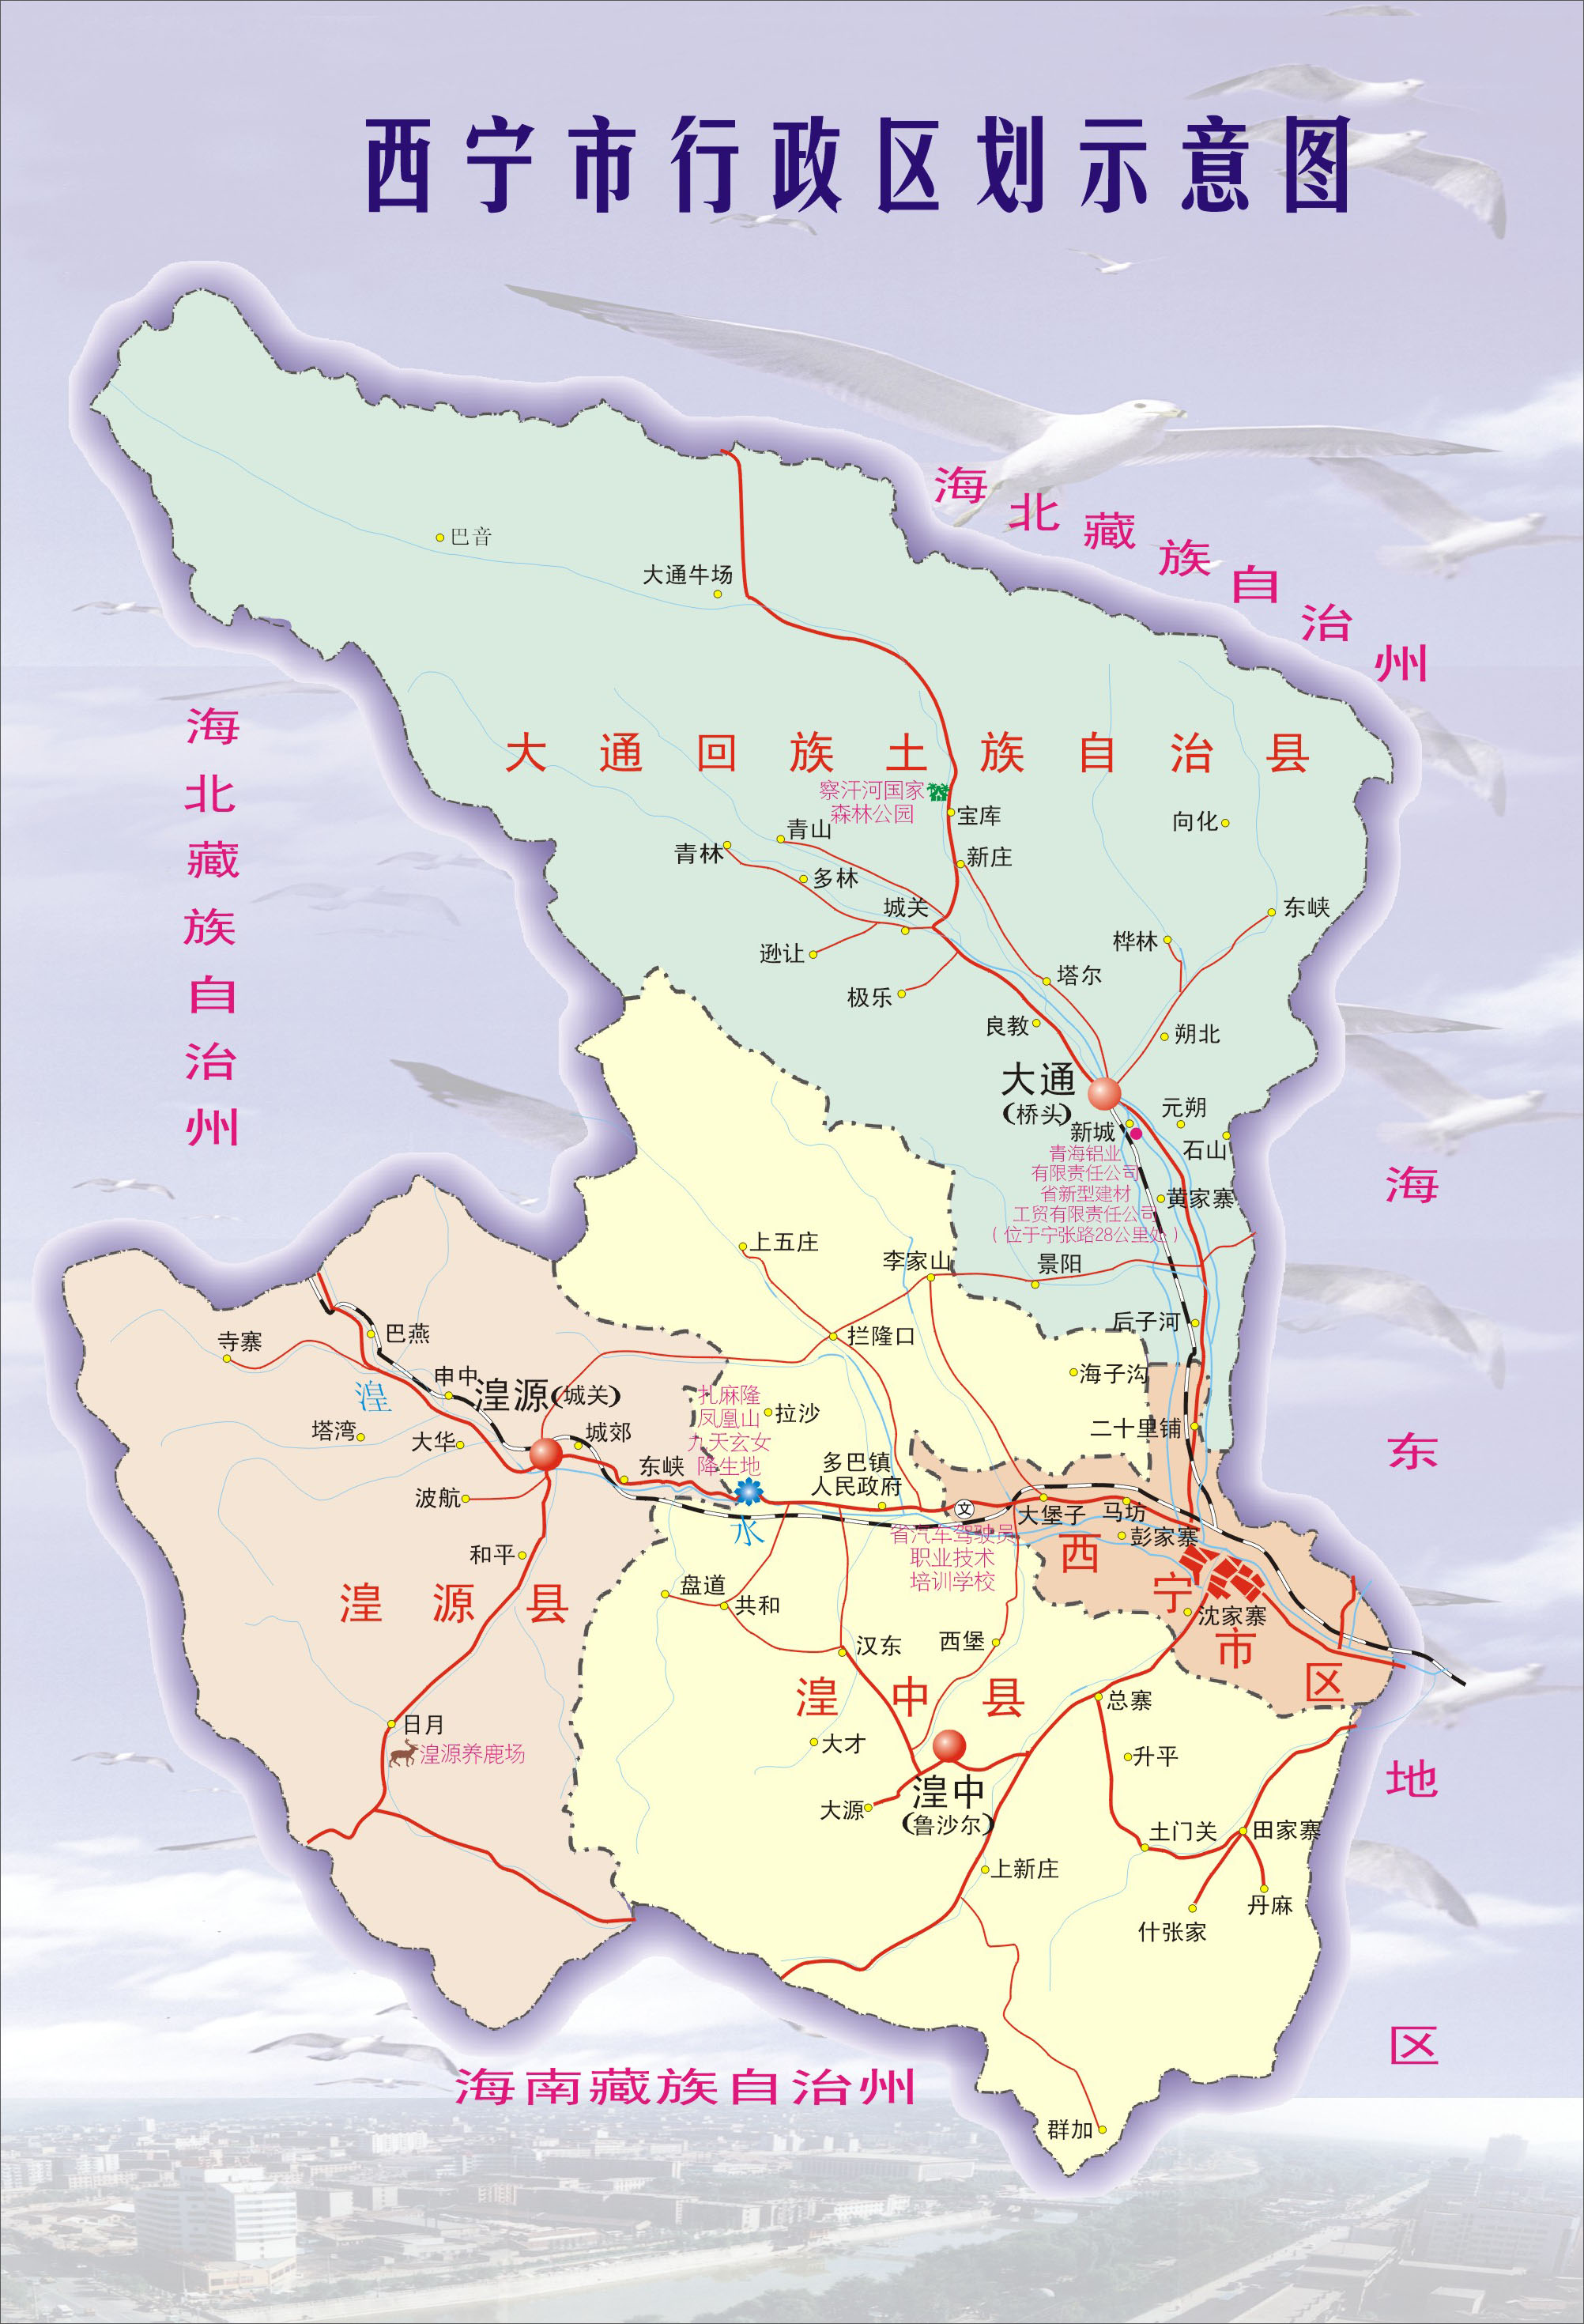 上一幅地图: 塔尔景区导游图 | 西宁市 | 下一幅地图: 西宁市区全景